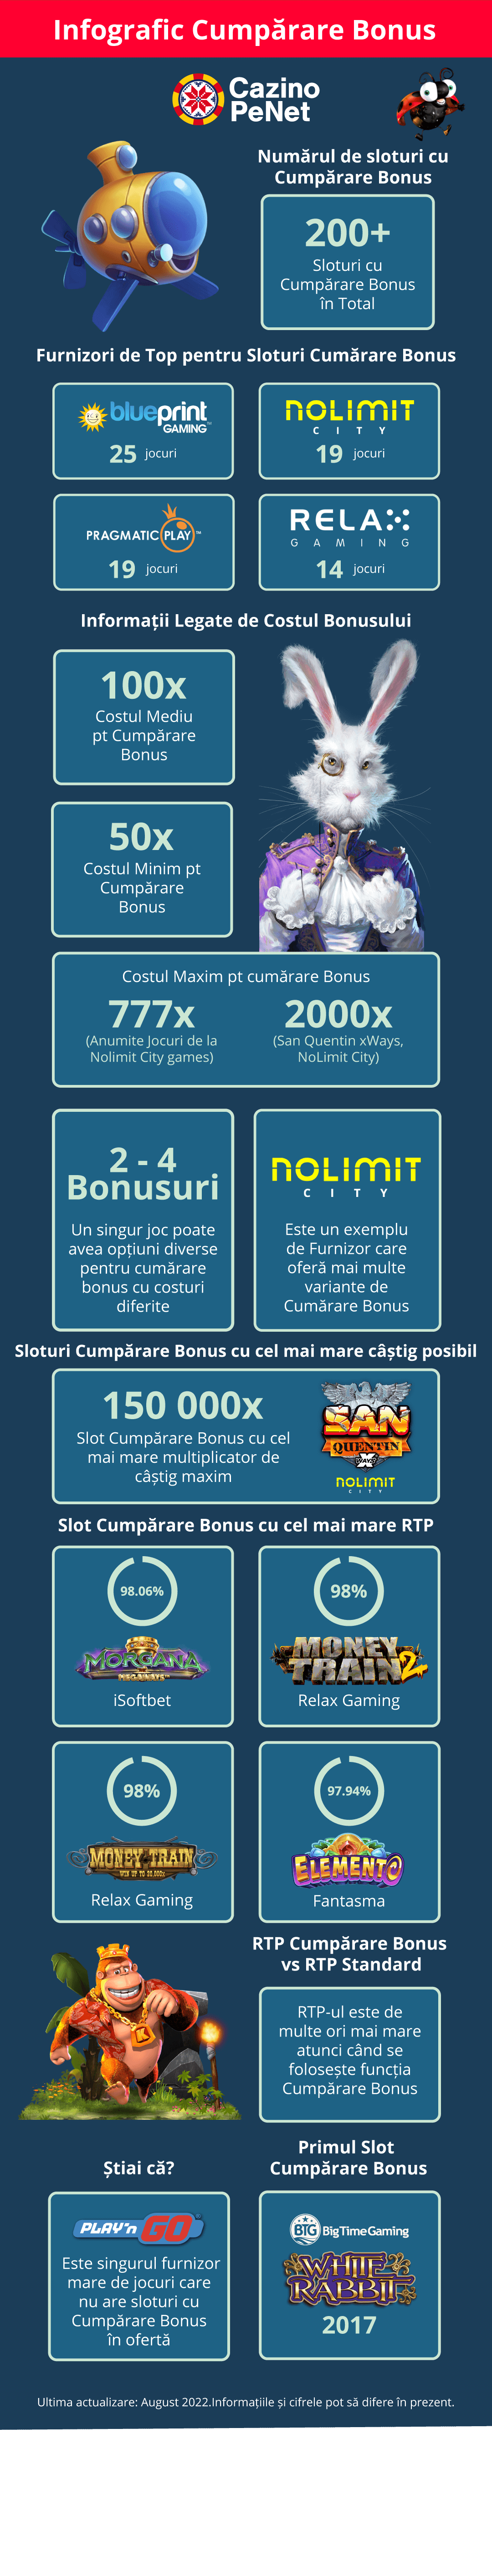 infografic sloturi cumparare bonus